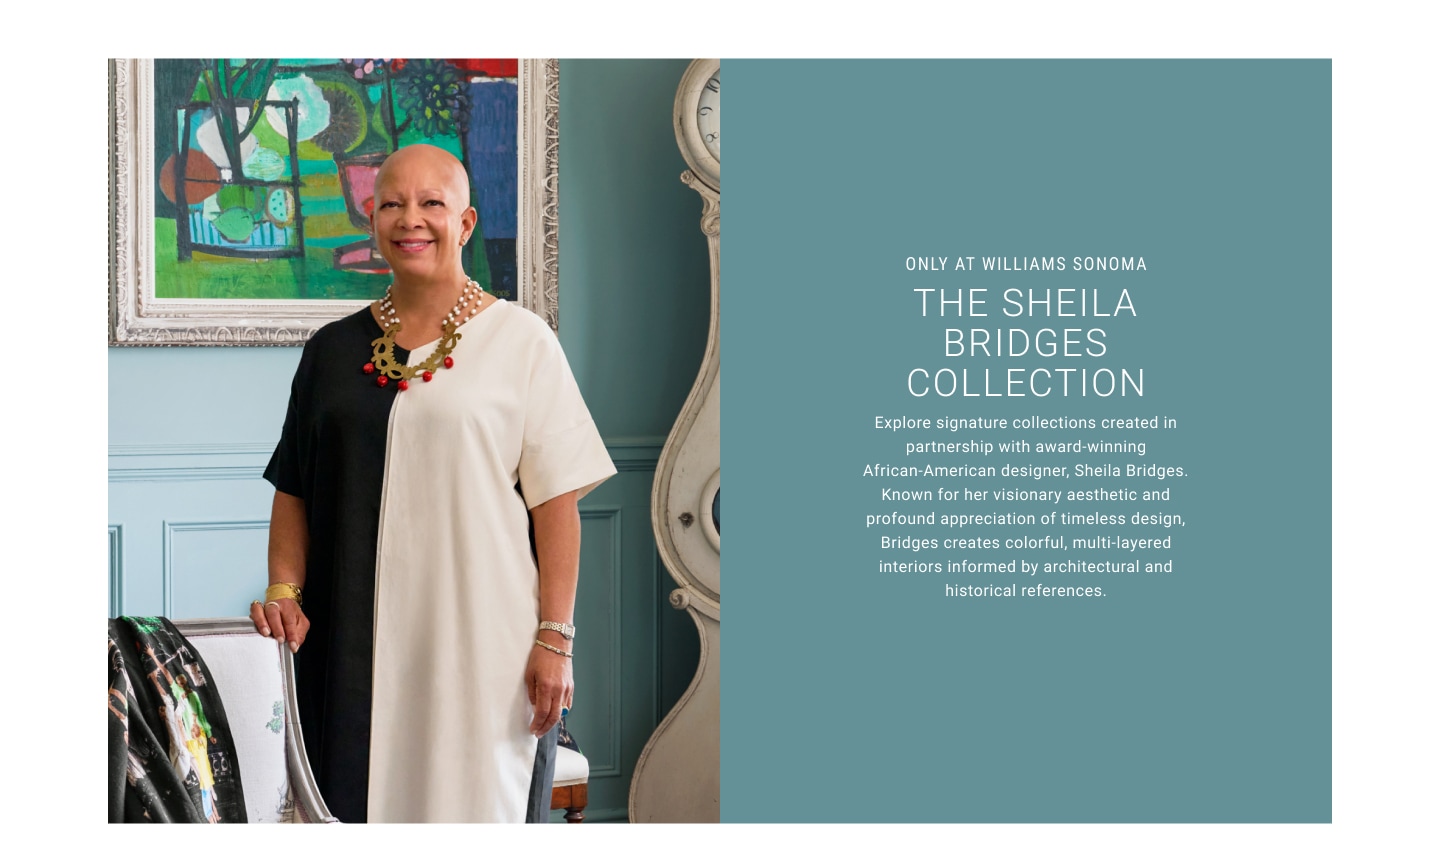 The Sheila Bridges Collection